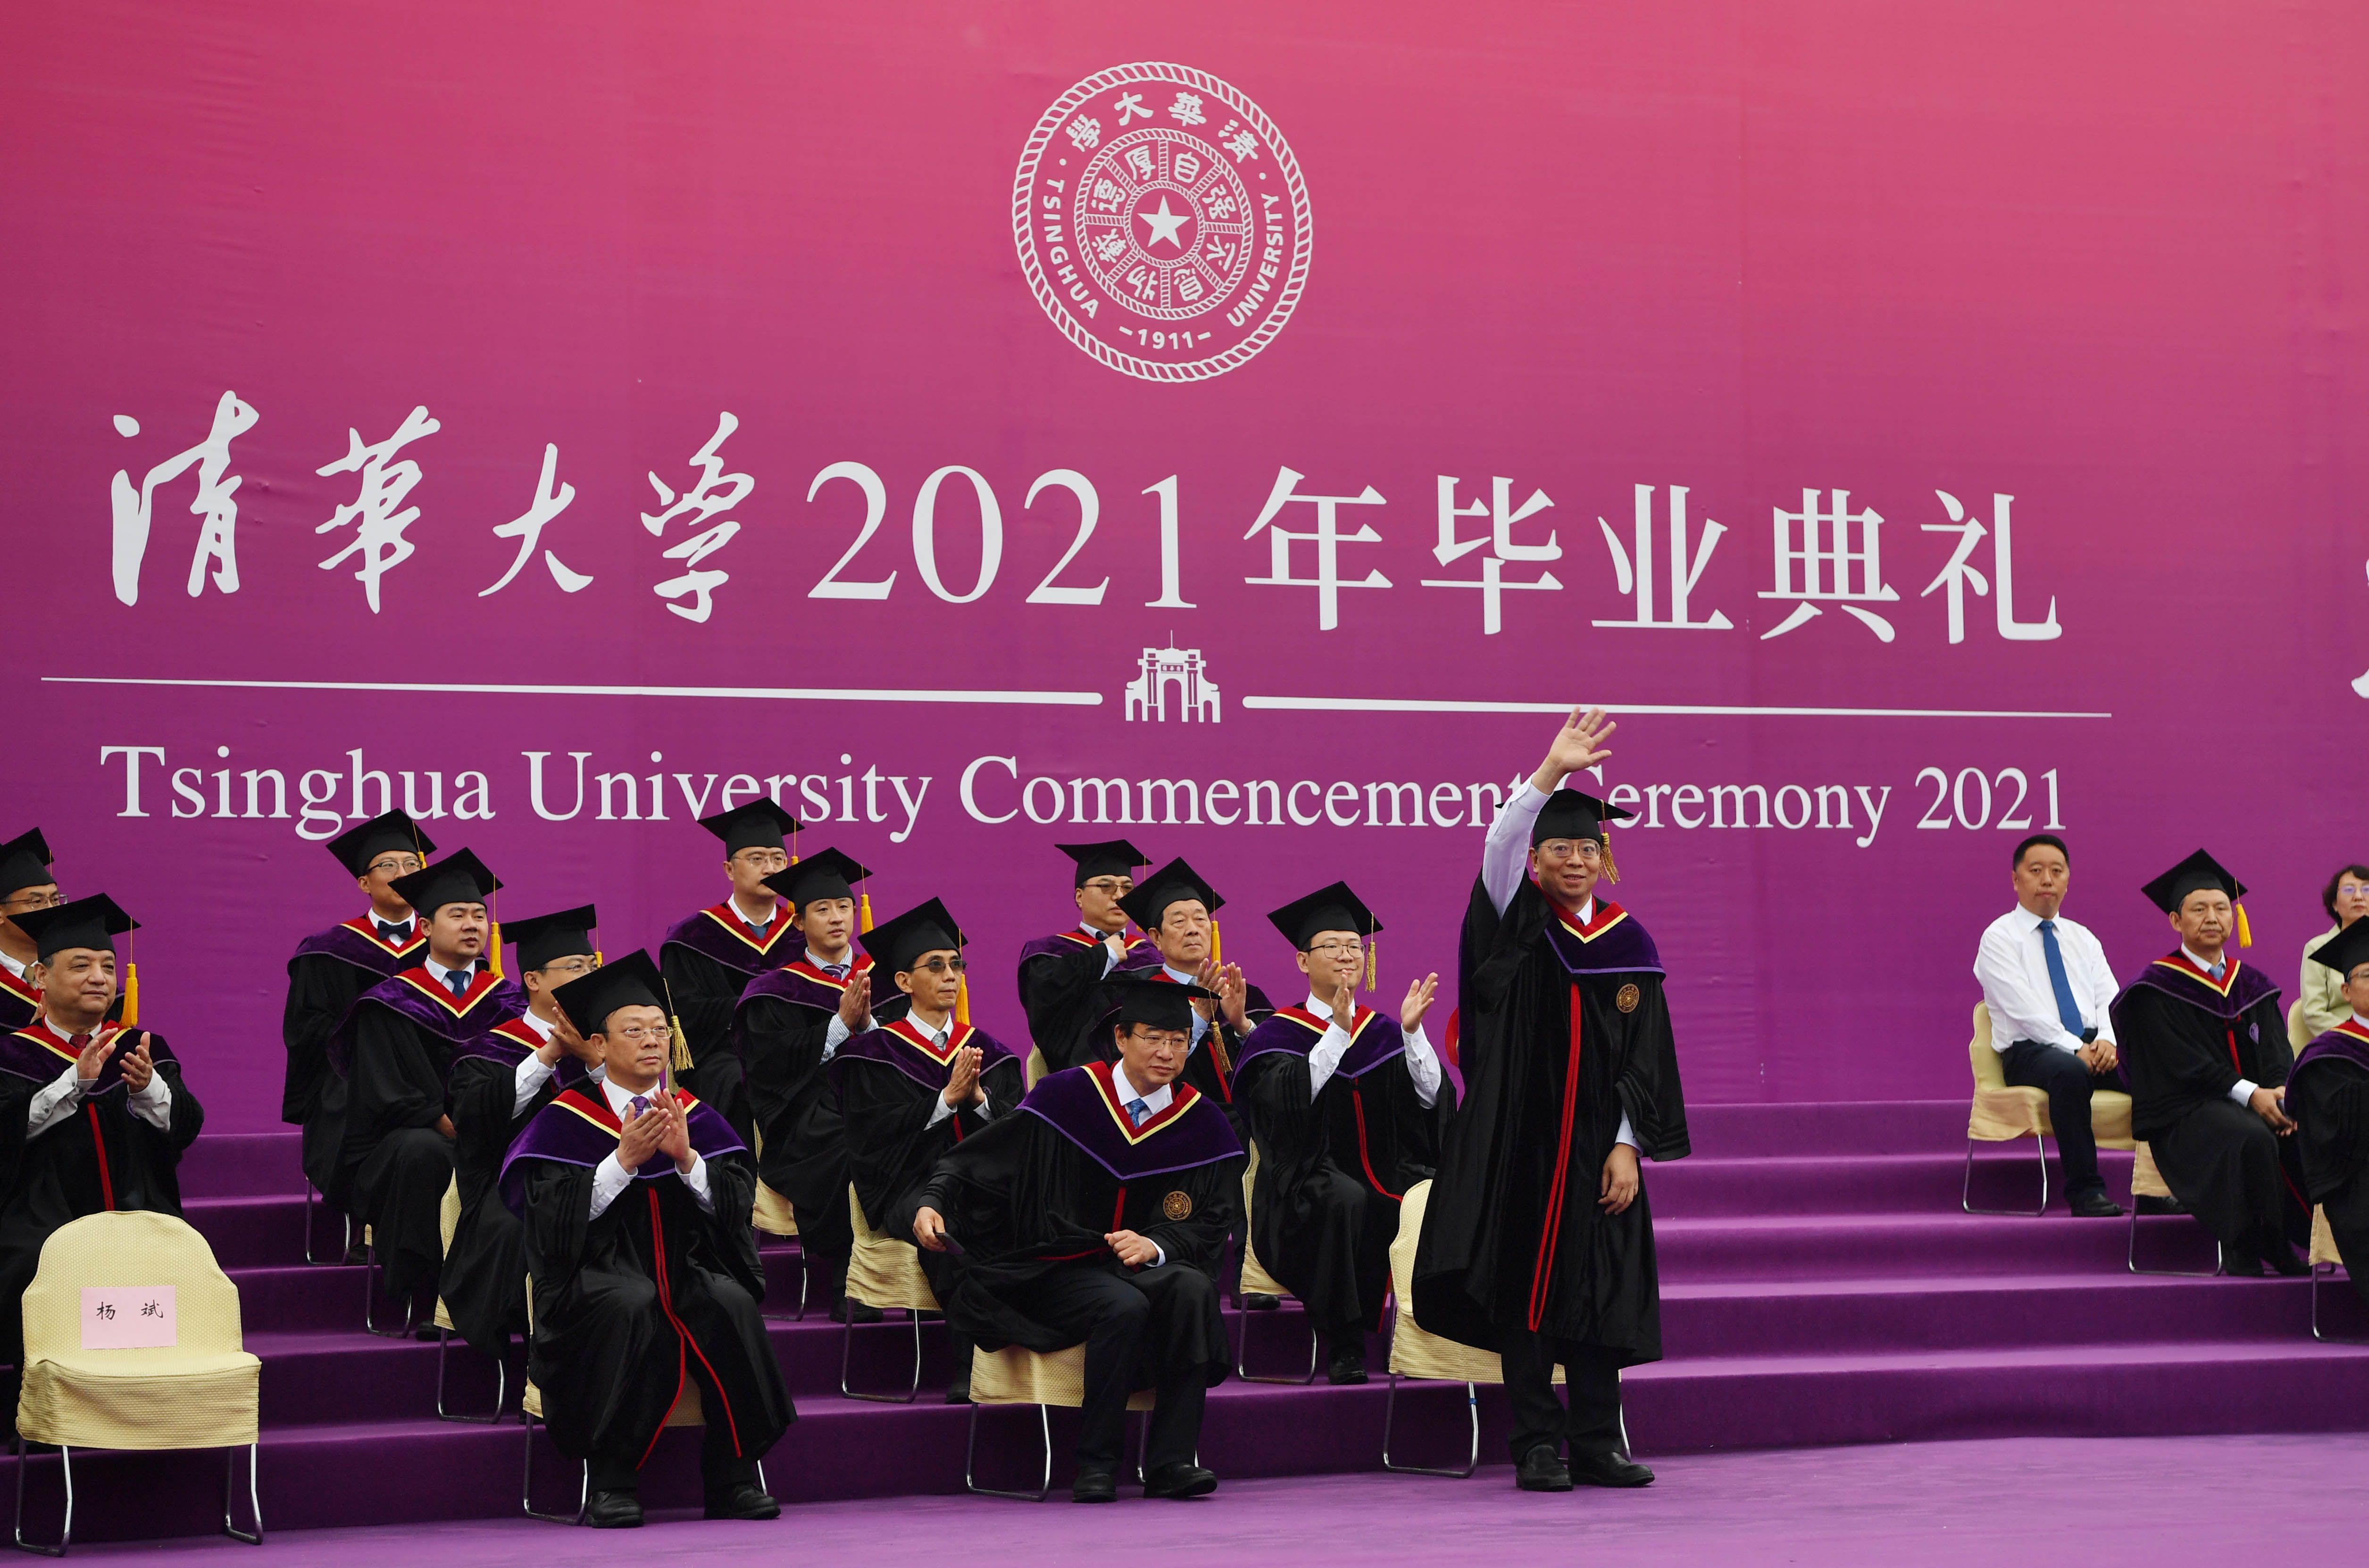 清华大学研究生毕业典礼举行,8000余名博士,硕士研究生从清华大学毕业